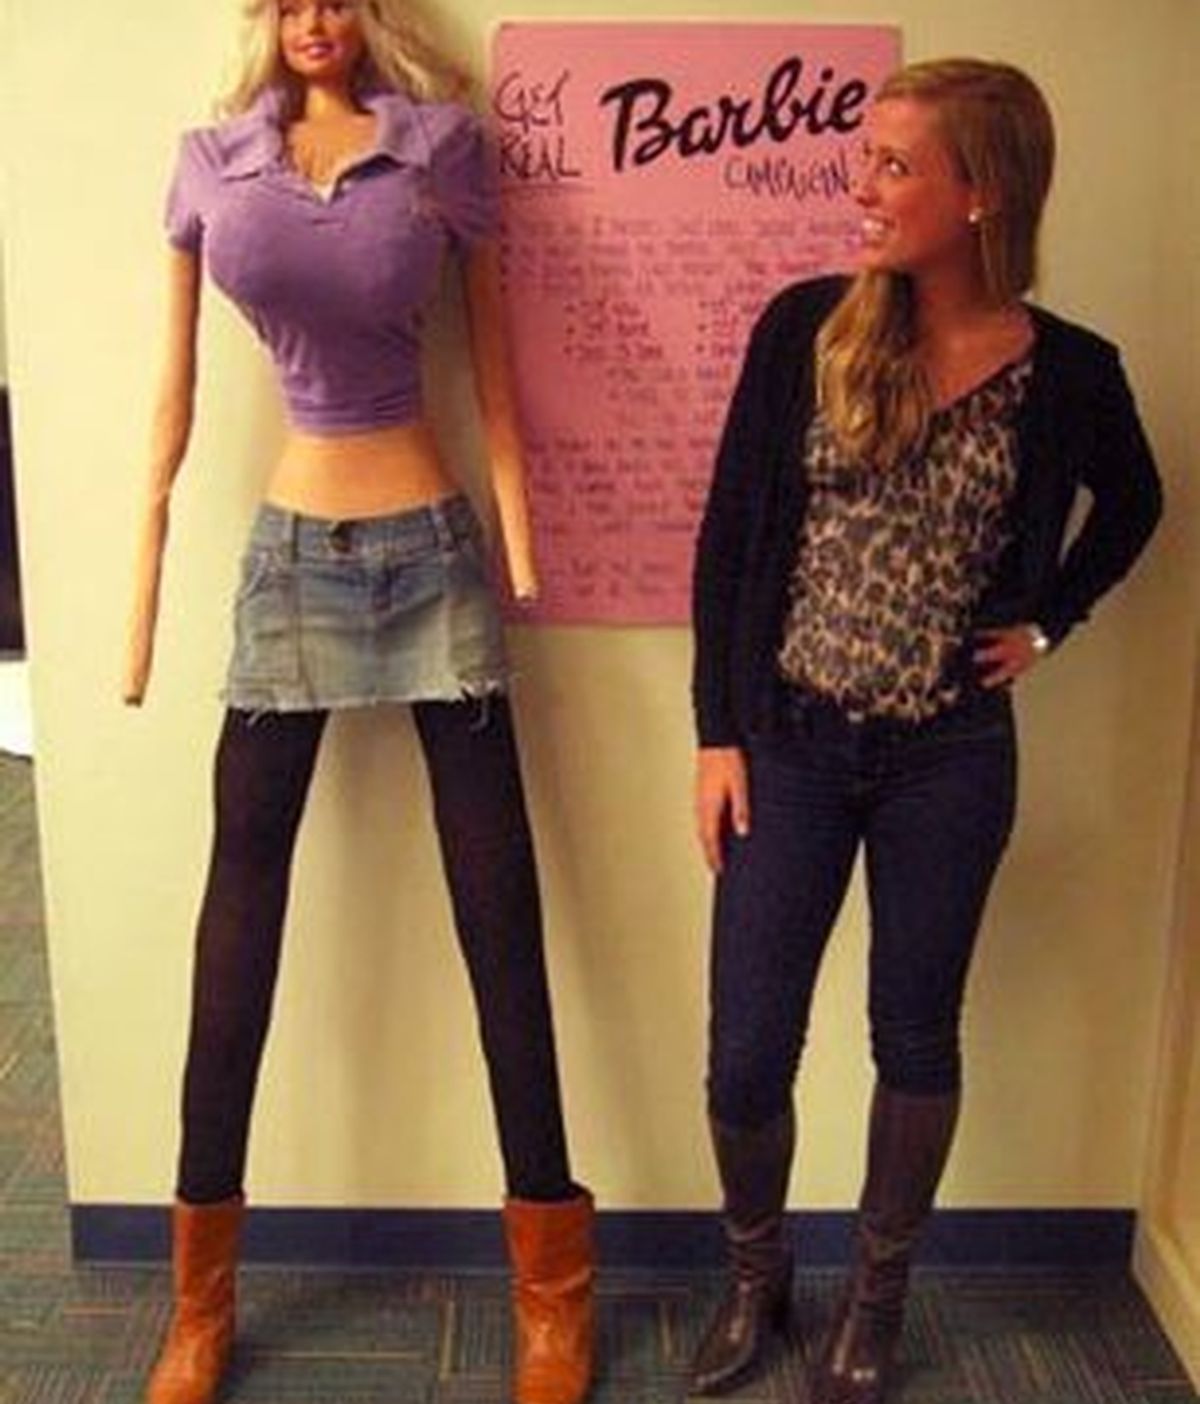 La Barbie construida por Galia Slayen para sensibilizar a las jóvenes de su edad del riesgo de sufrir anorexia.